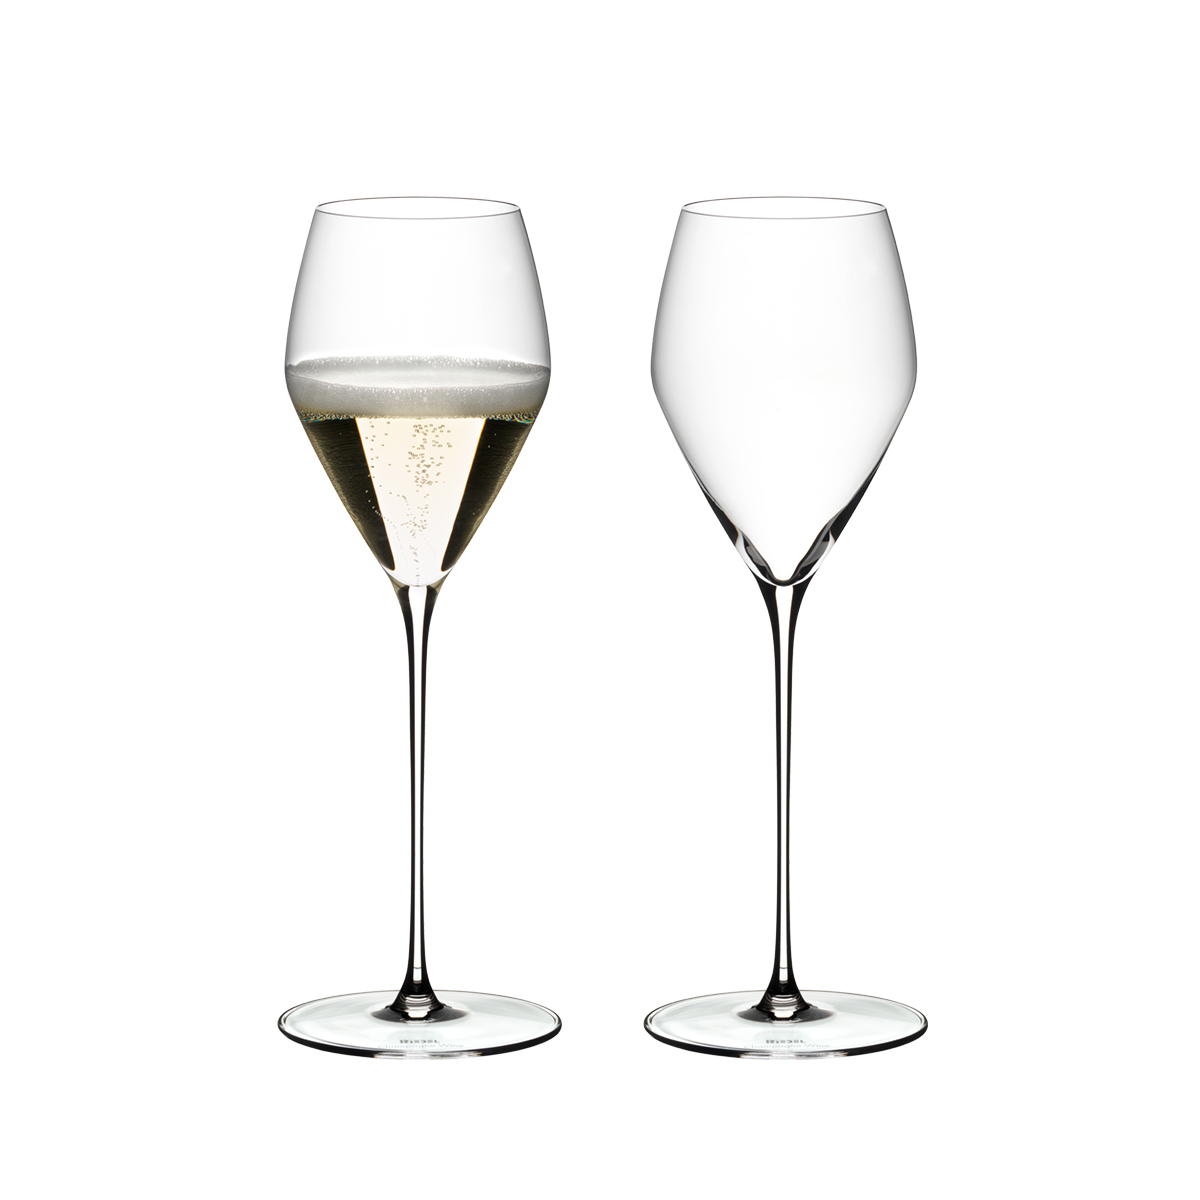 リーデル・ヴェローチェu003e シャンパーニュ・ワイン・グラス(2個入) - リーデル 《 公式 》